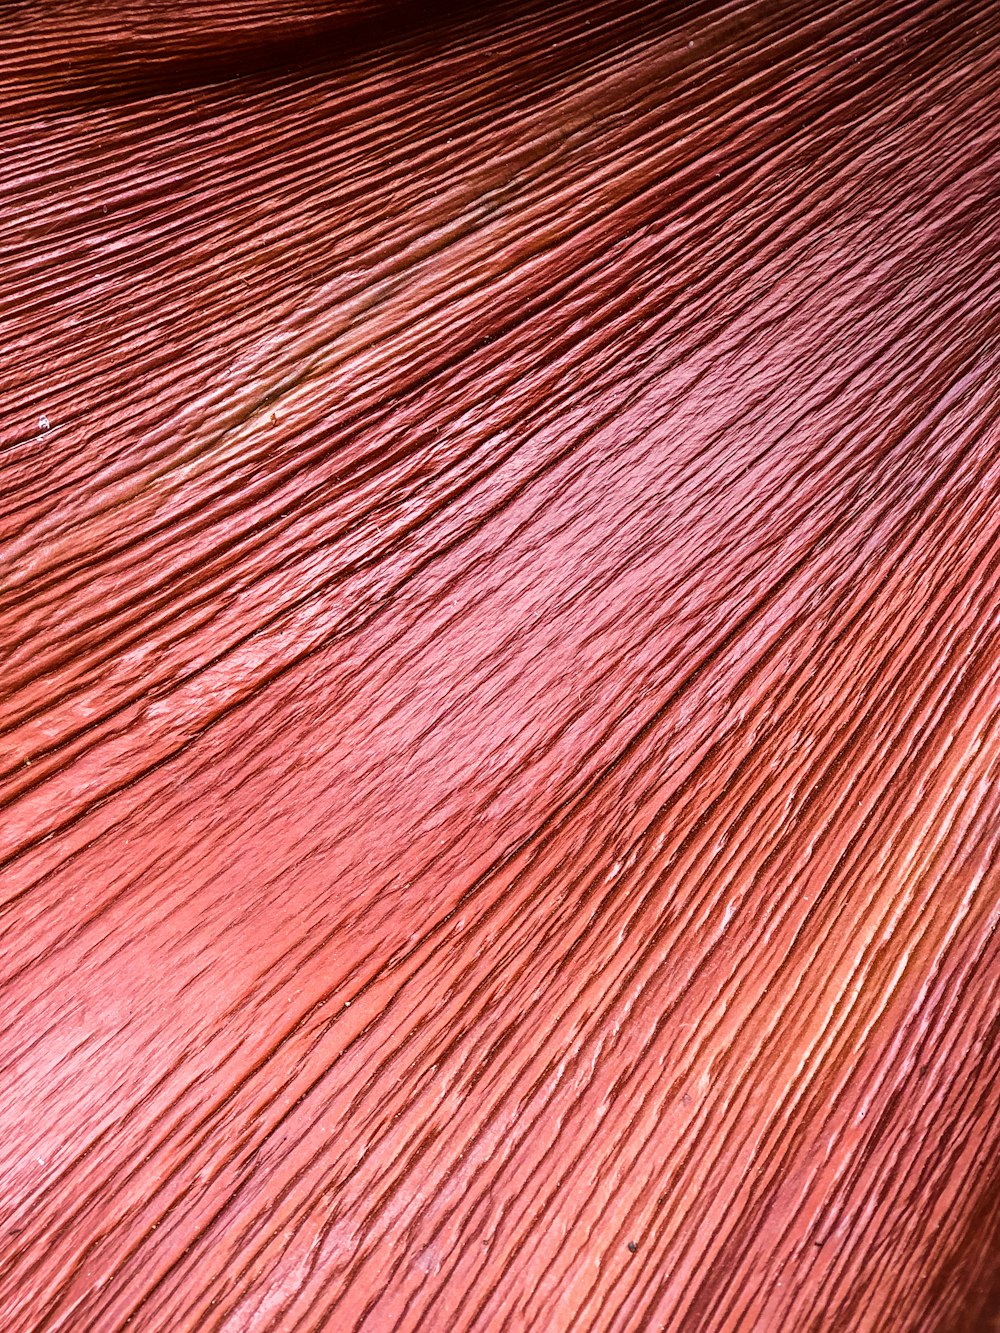 Gros plan d’une texture de cheveux roux